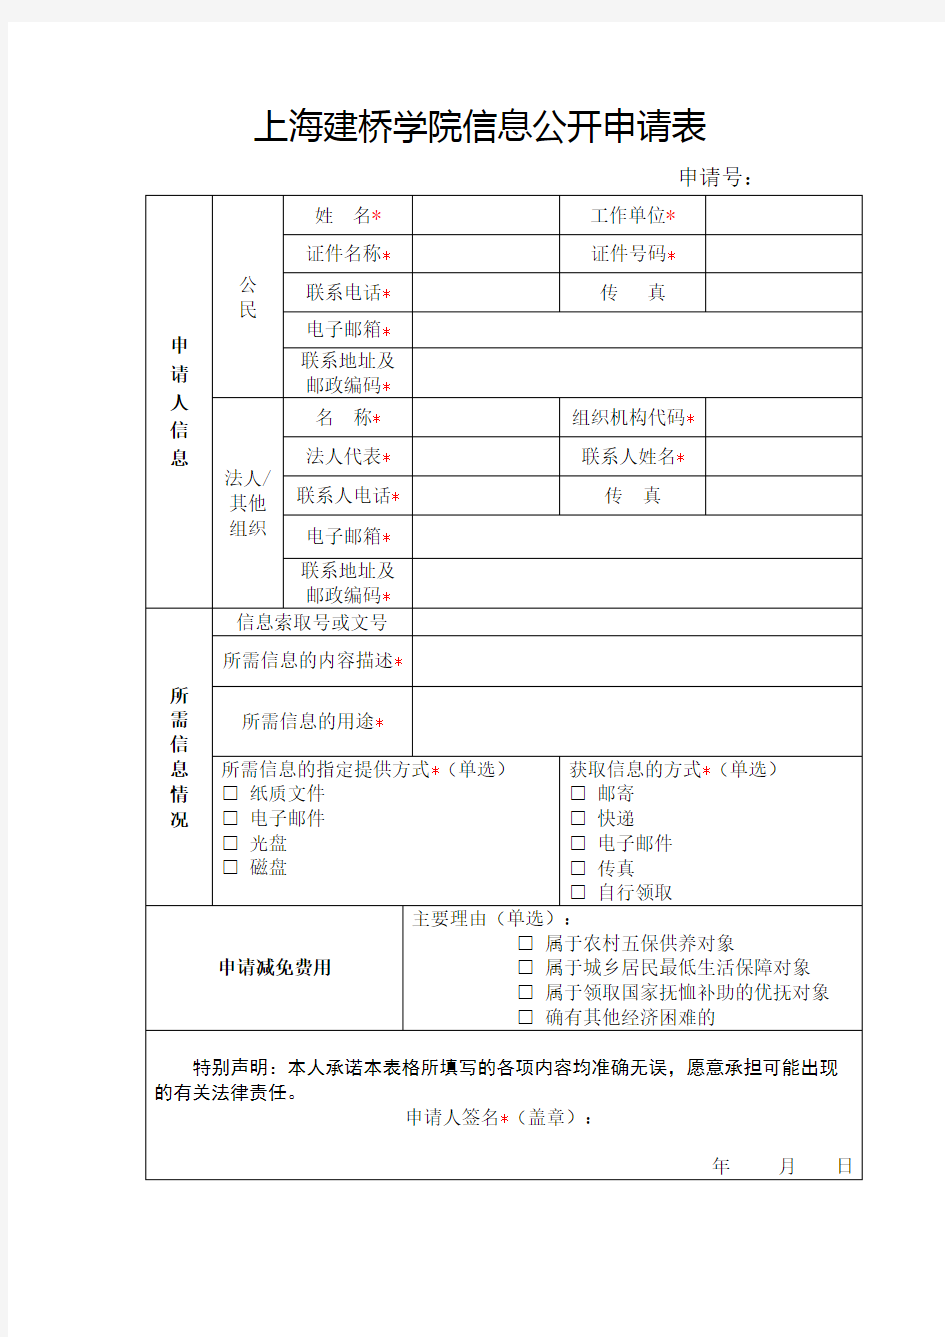 上海建桥学院信息公开申请表【模板】